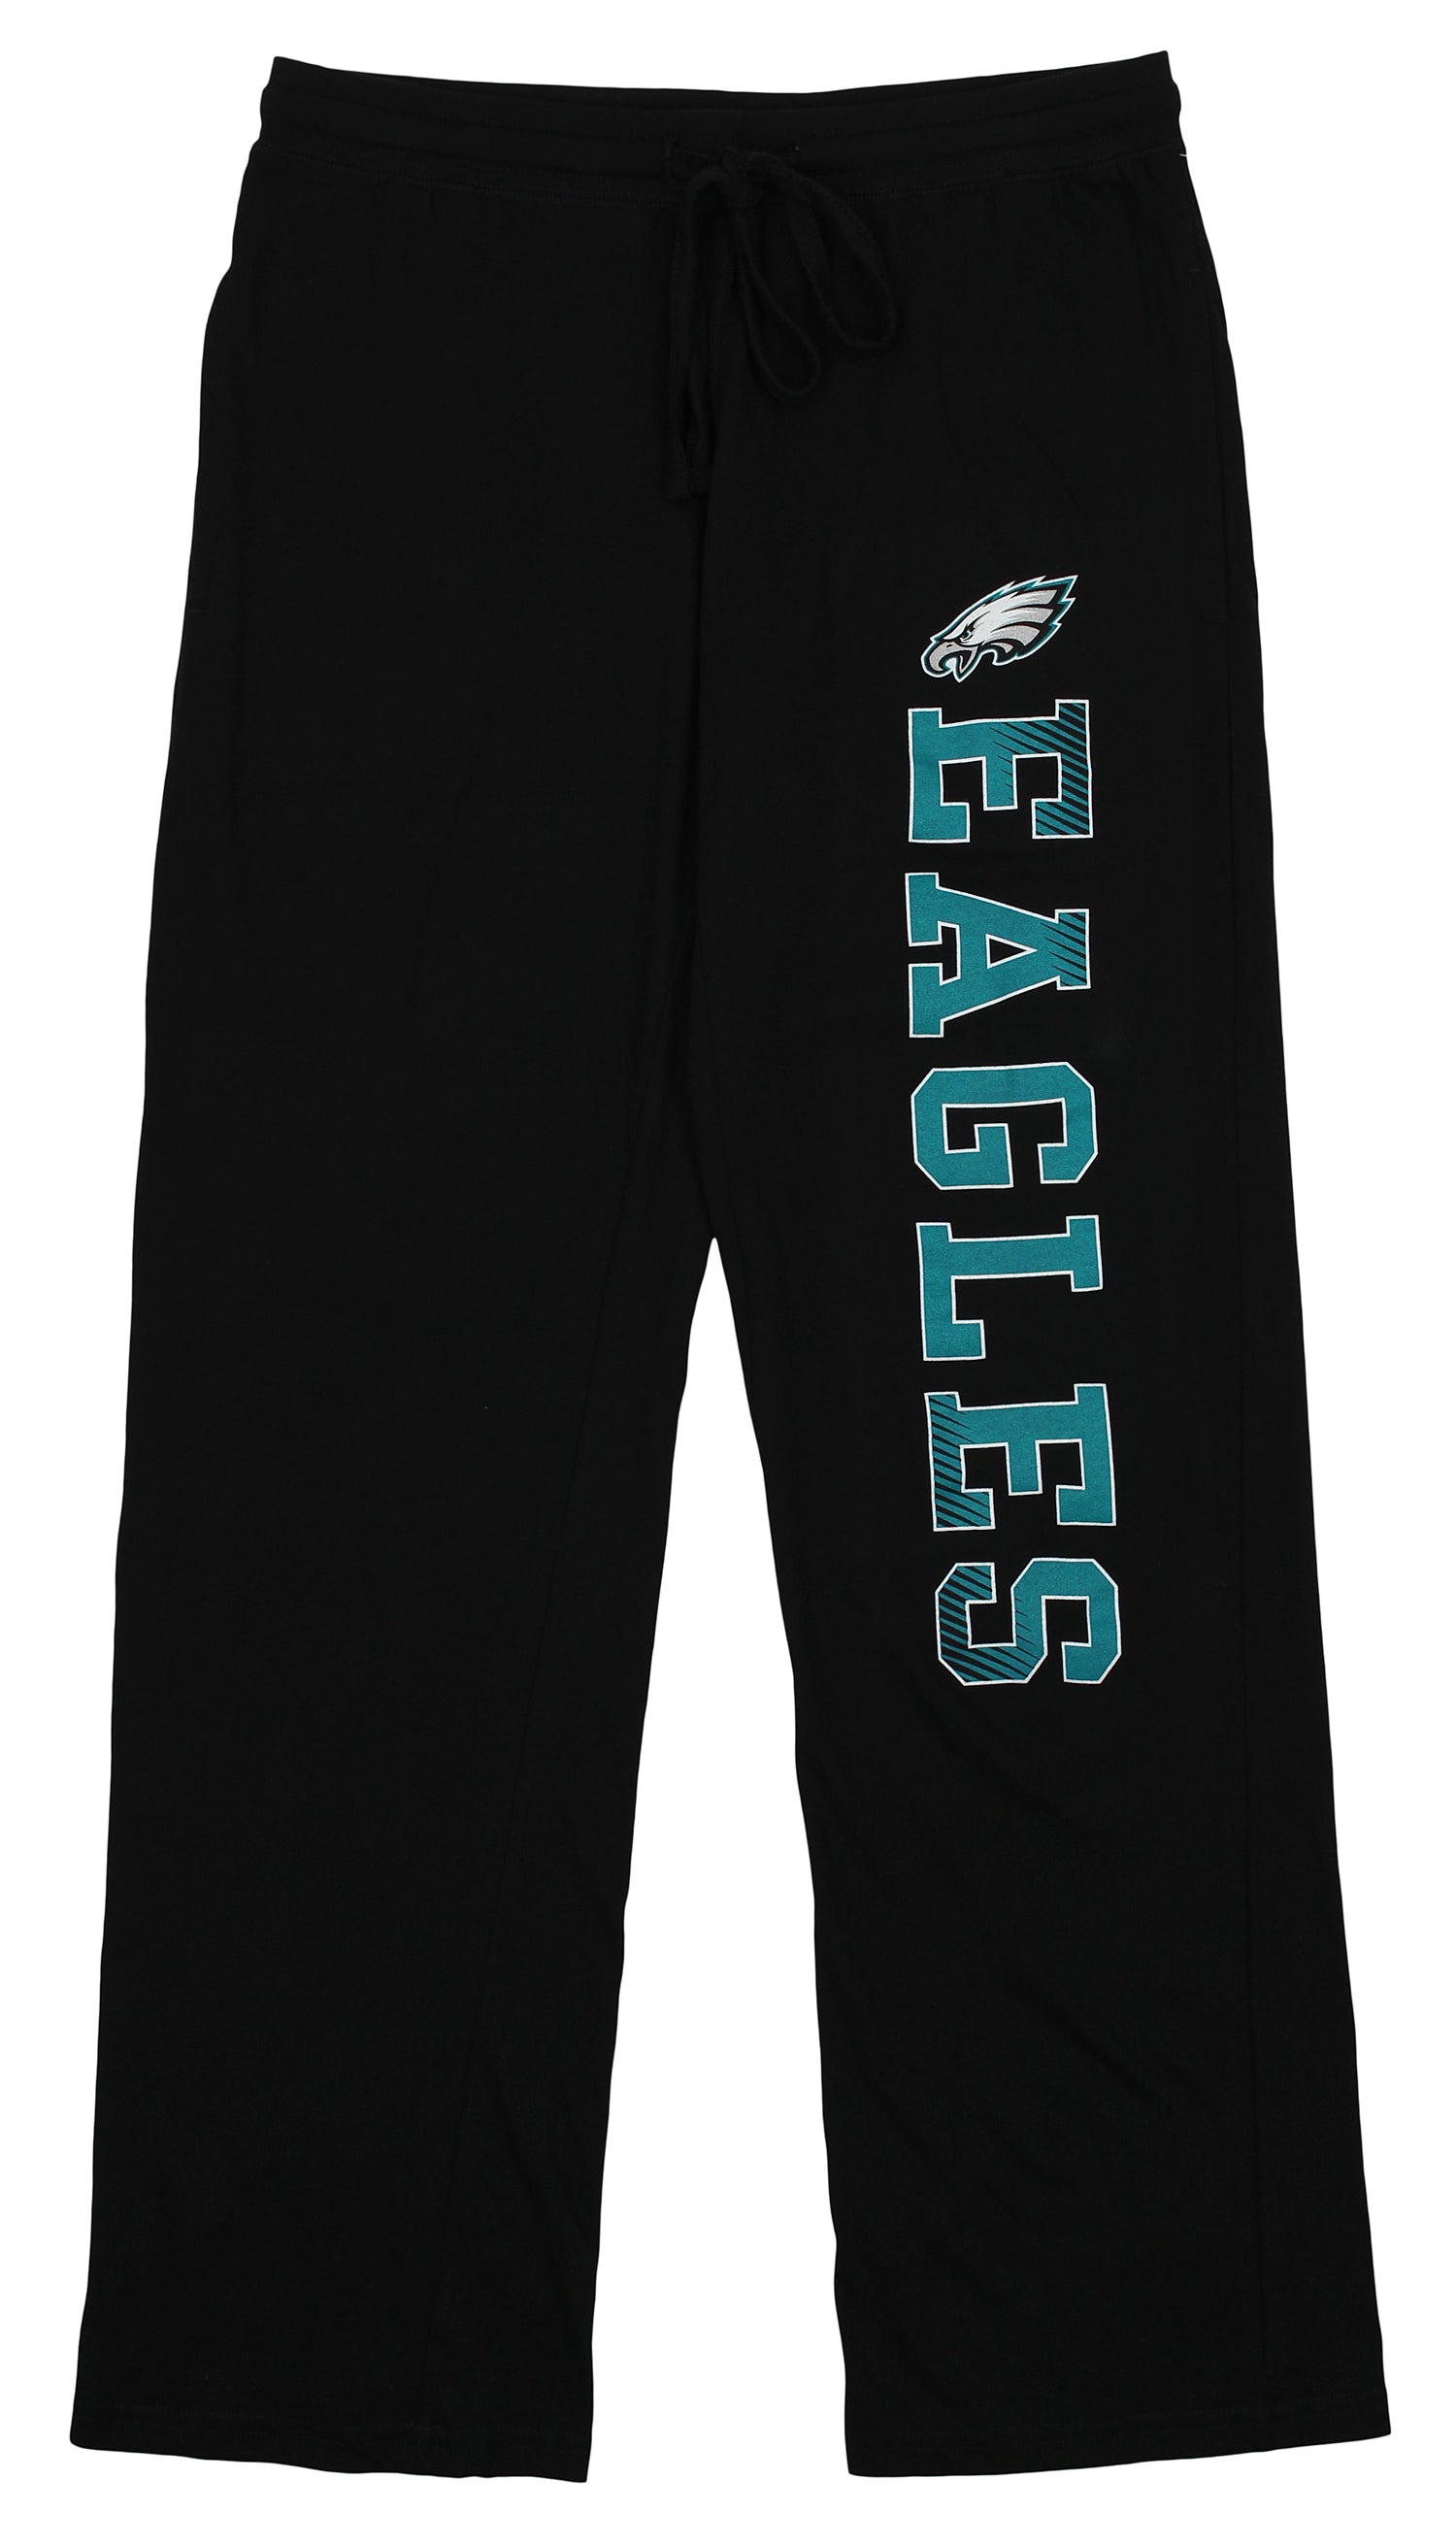 Philadelphia Eagles Pants, Eagles Sweatpants, Leggings, Yoga Pants, Joggers